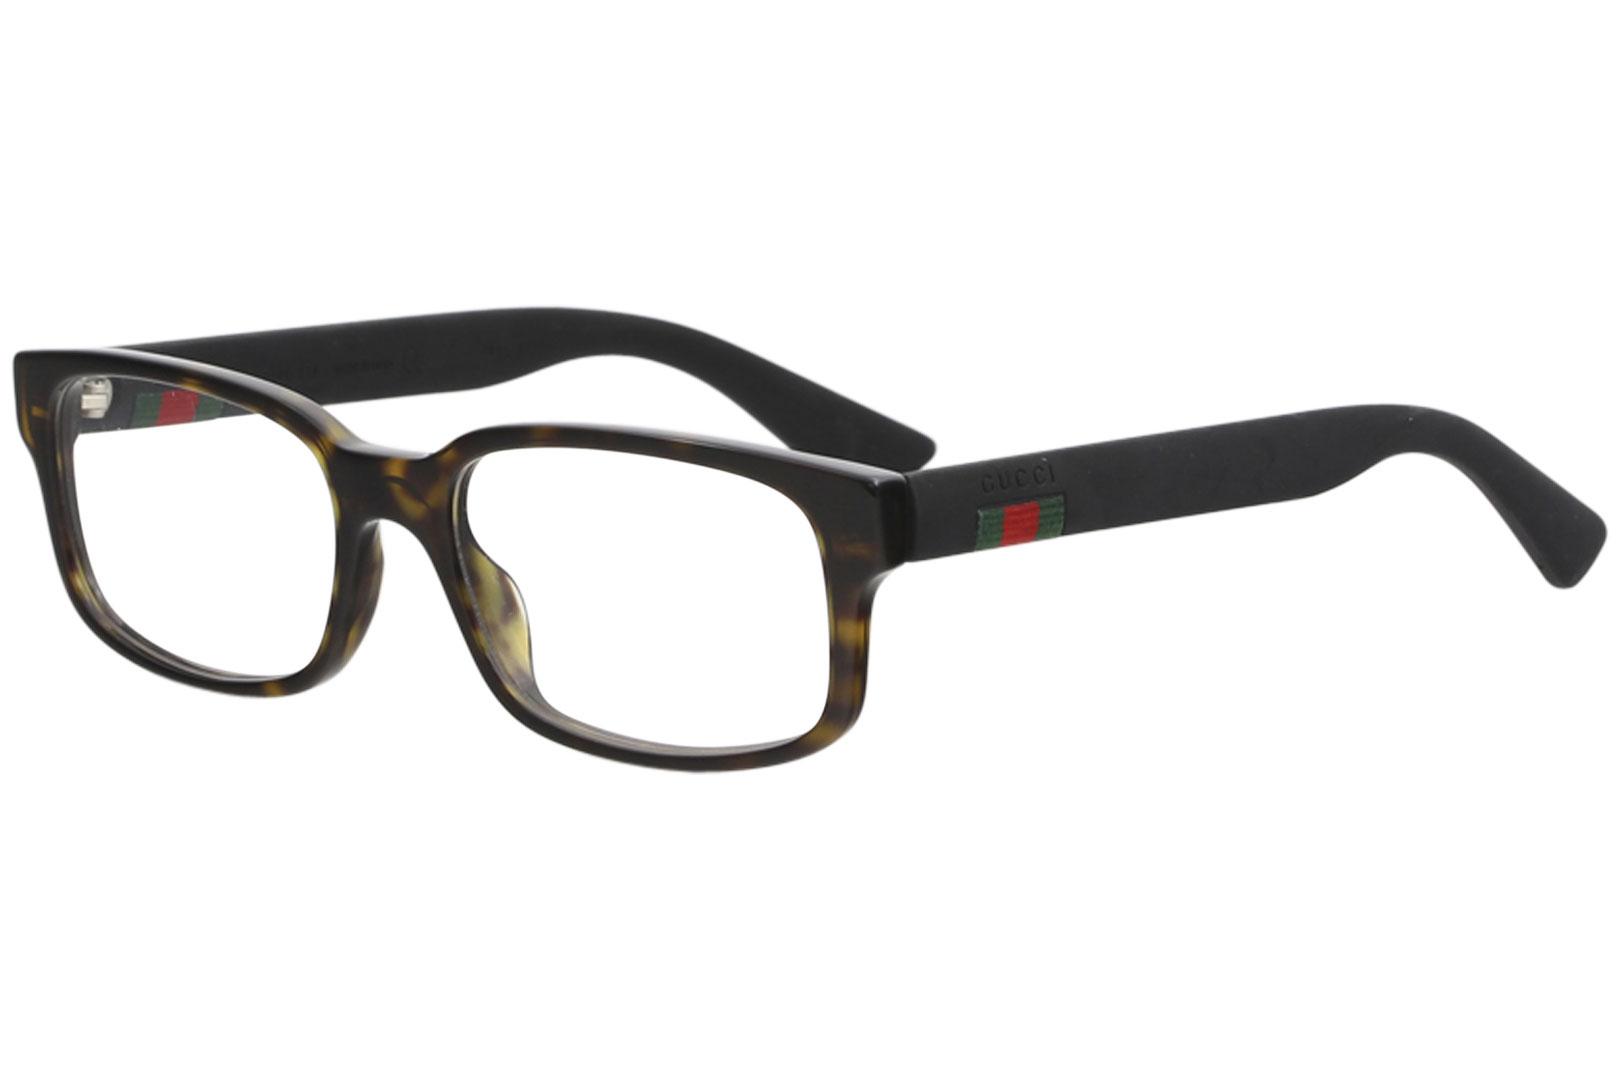 Gucci Men's Eyeglasses GG00120 GG/00120 Full Rim Optical Frame - Havana/Black   002 -  Lens 54 Bridge 18 Temple 145mm